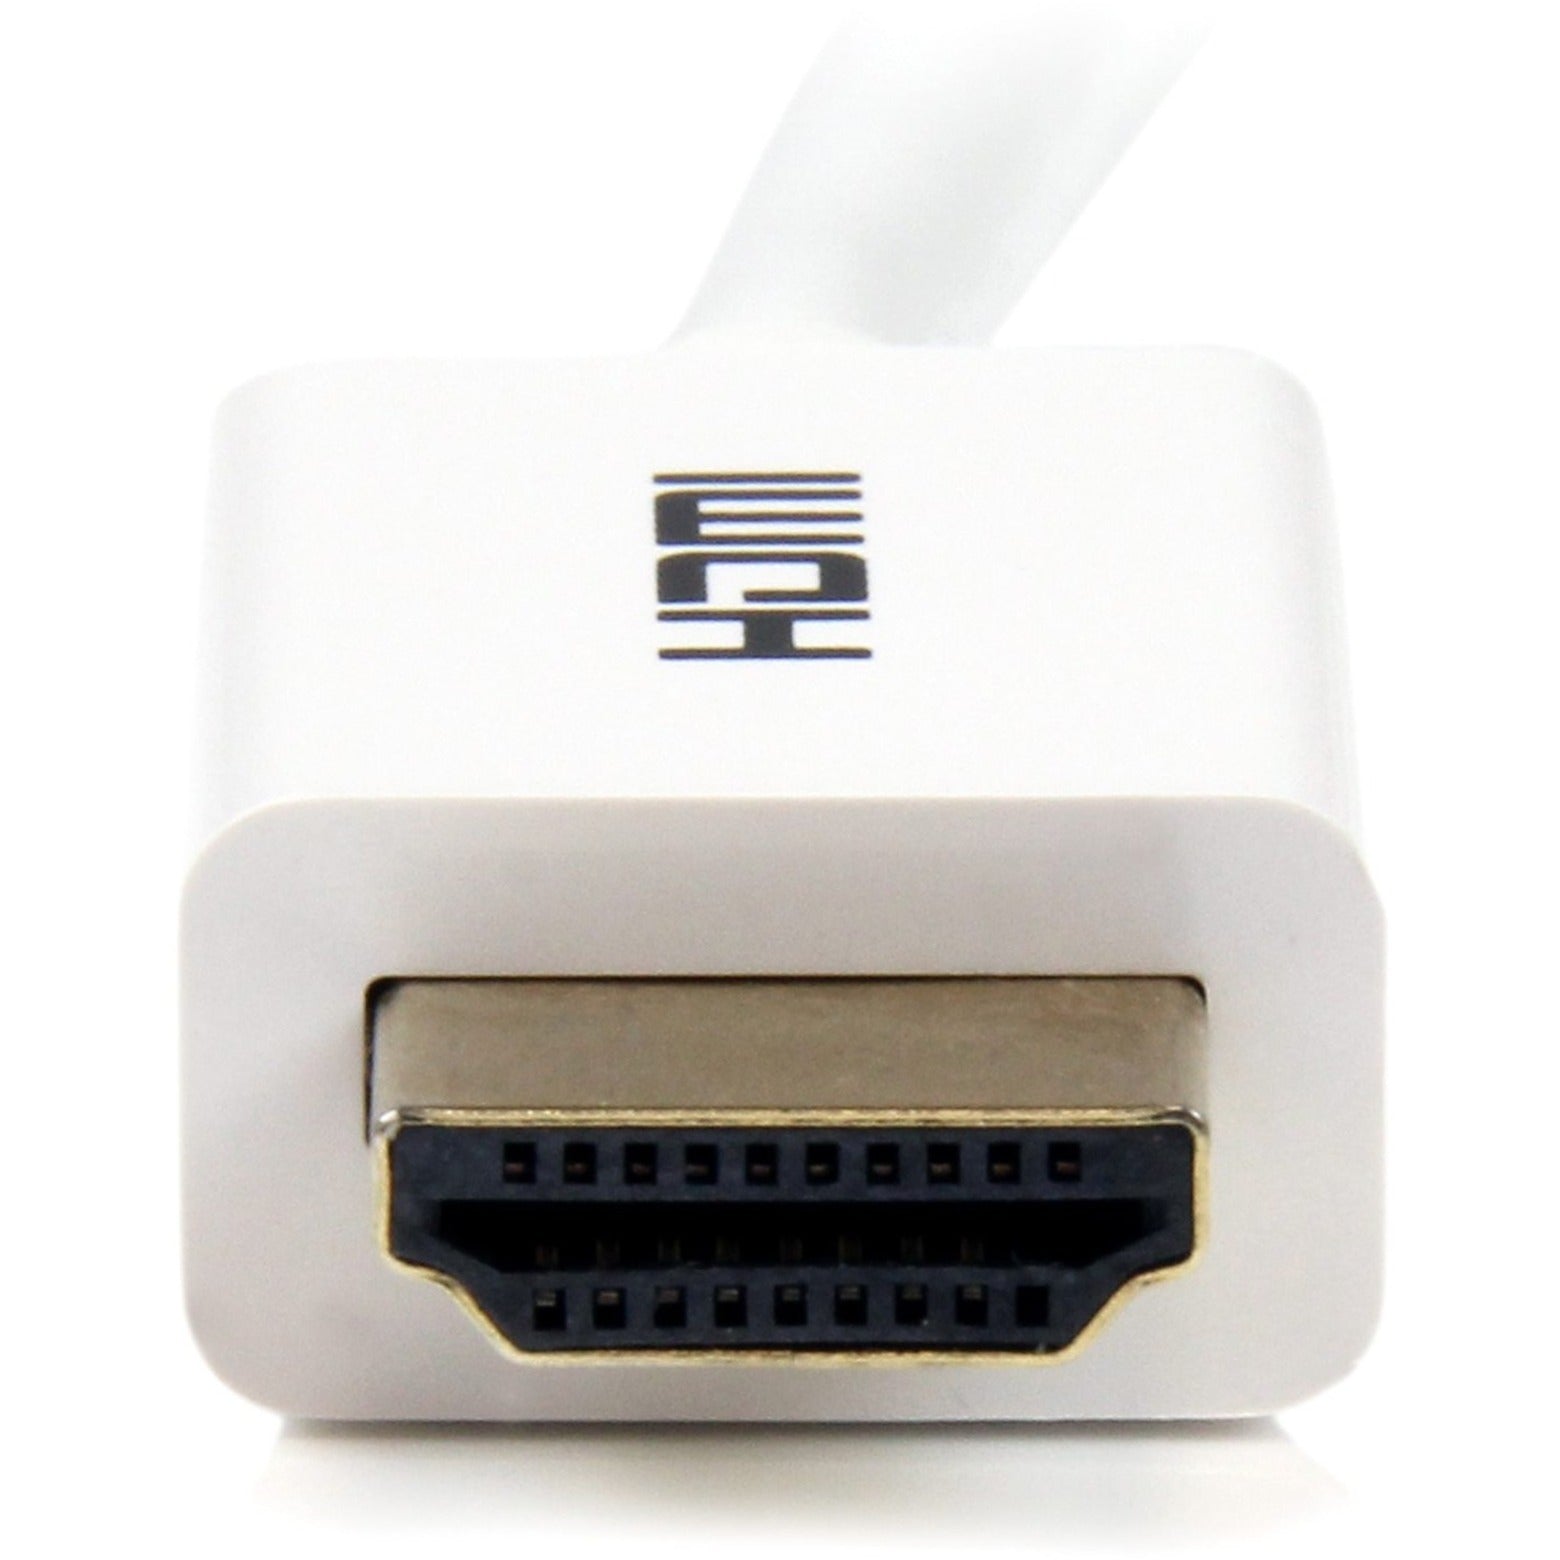 品牌：StarTech.com 高清晰度 HDMI 至 HDMI 电缆 - HDMI 至 HDMI - M/M 防腐蚀 10.2 Gbit/s 数据传输速率 白色 CL3 壁内高清 HDMI 电缆 - 5 米 (16 英尺)